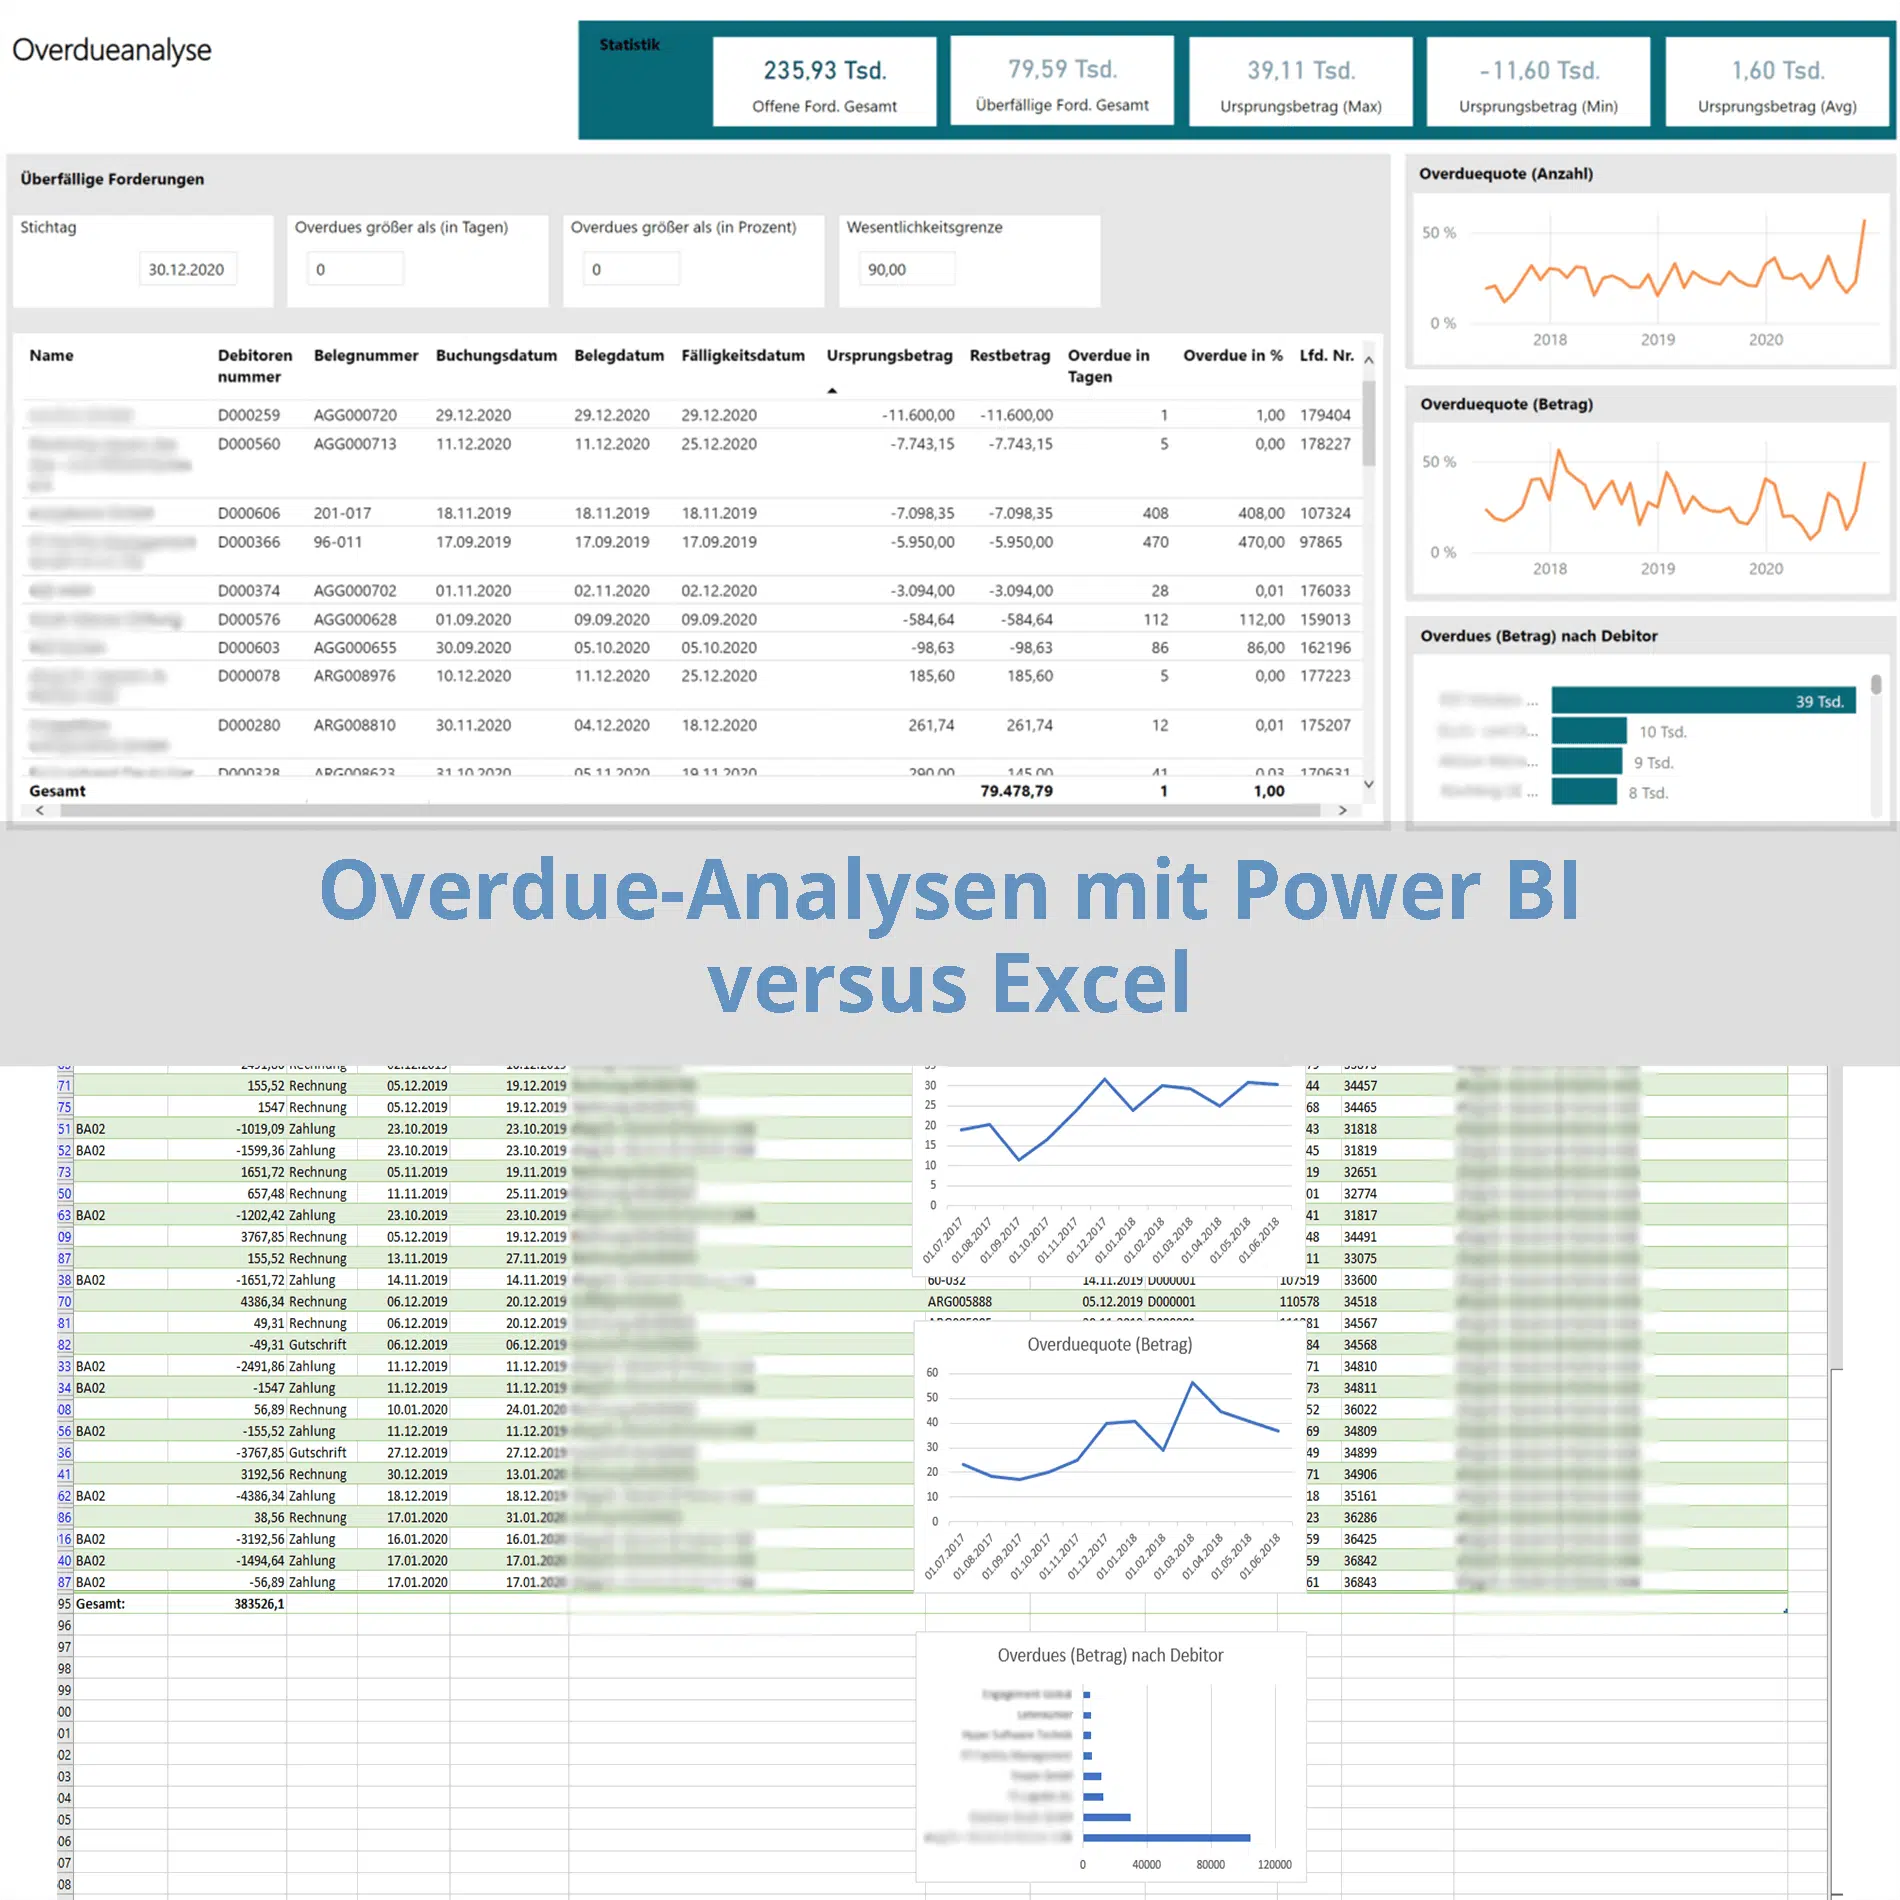 Vergleich Overdueanalysen mit MS Power BI versus Excel